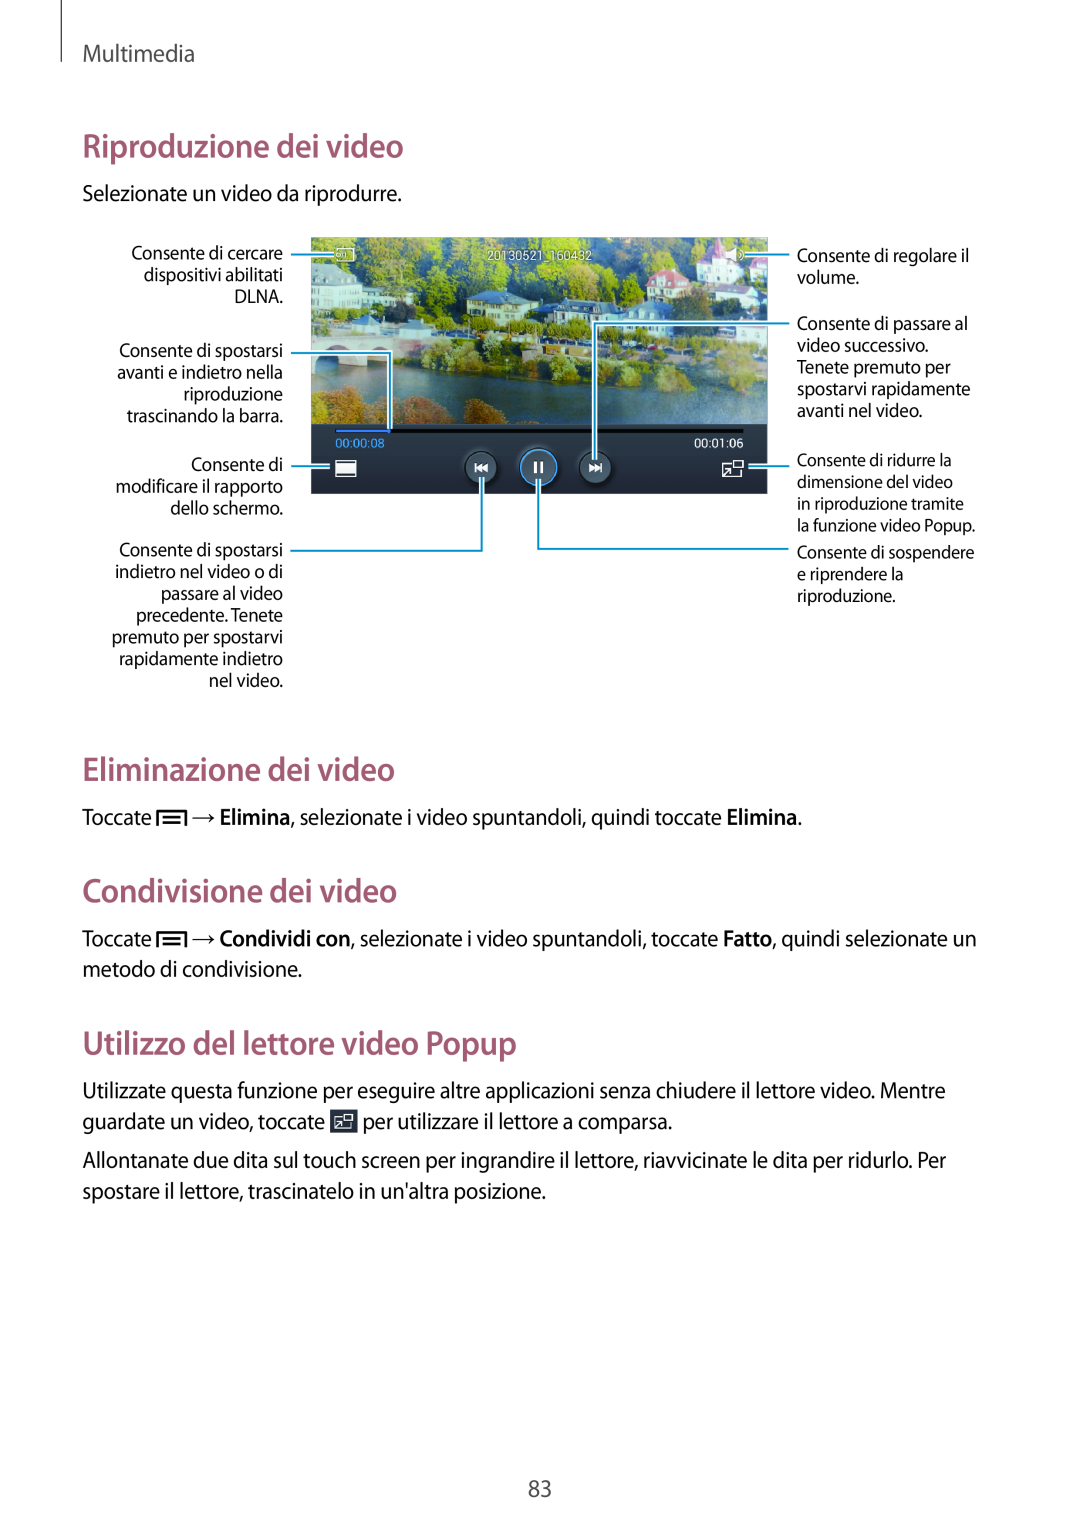 Samsung GT-I9195ZKATIM manual Eliminazione dei video, Condivisione dei video, Utilizzo del lettore video Popup, Multimedia 